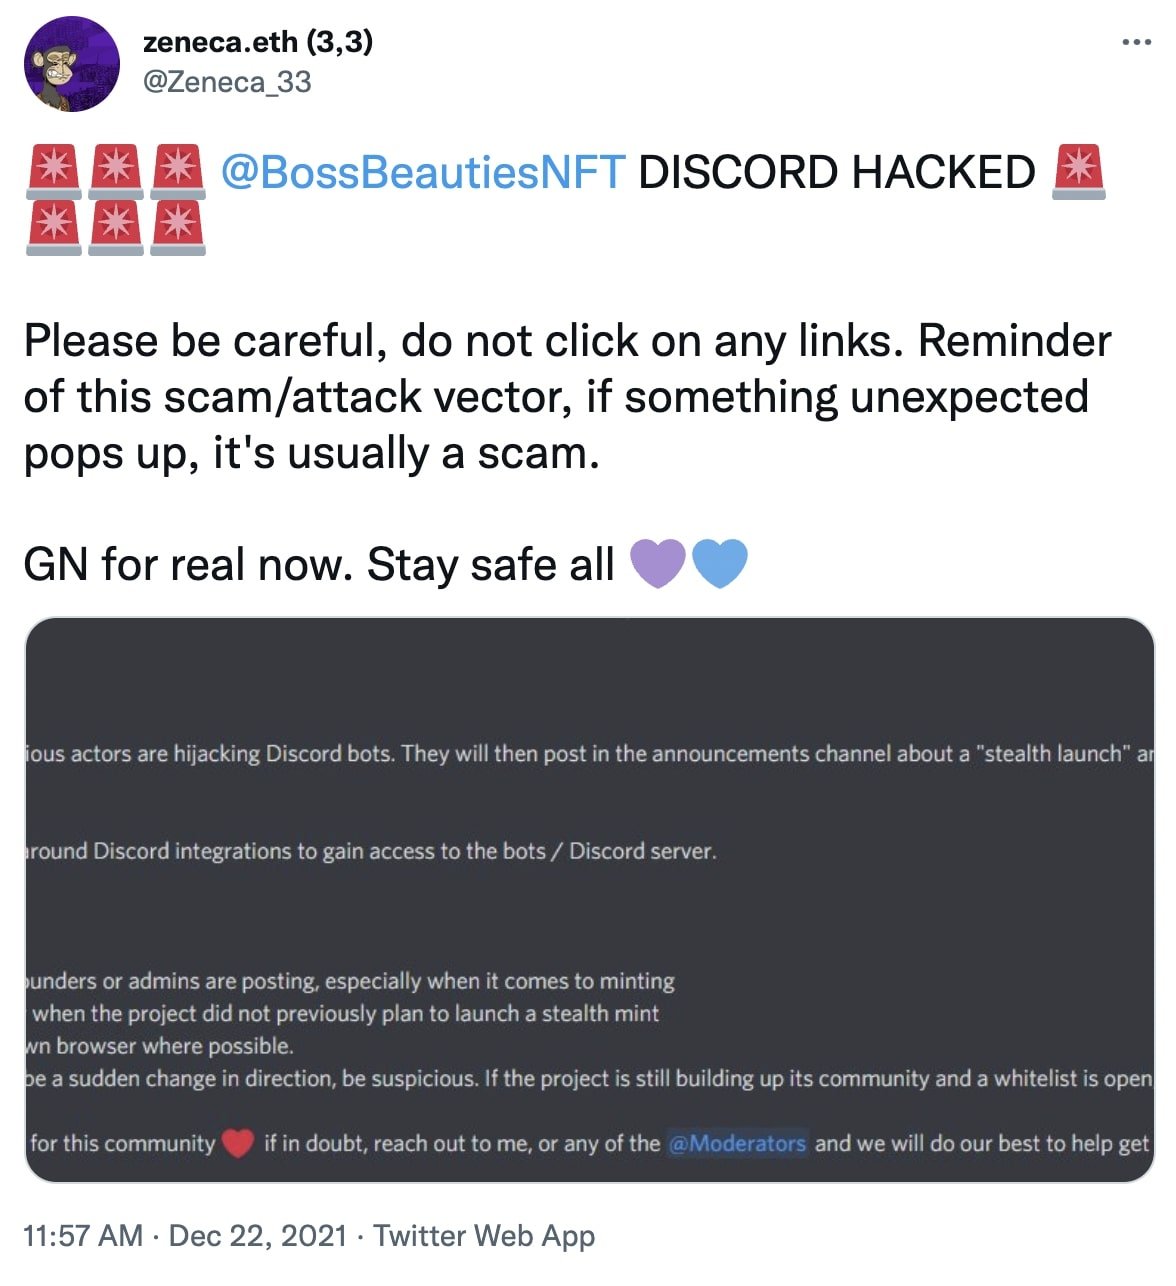 Zeneca's tweet on Discord NFT scams